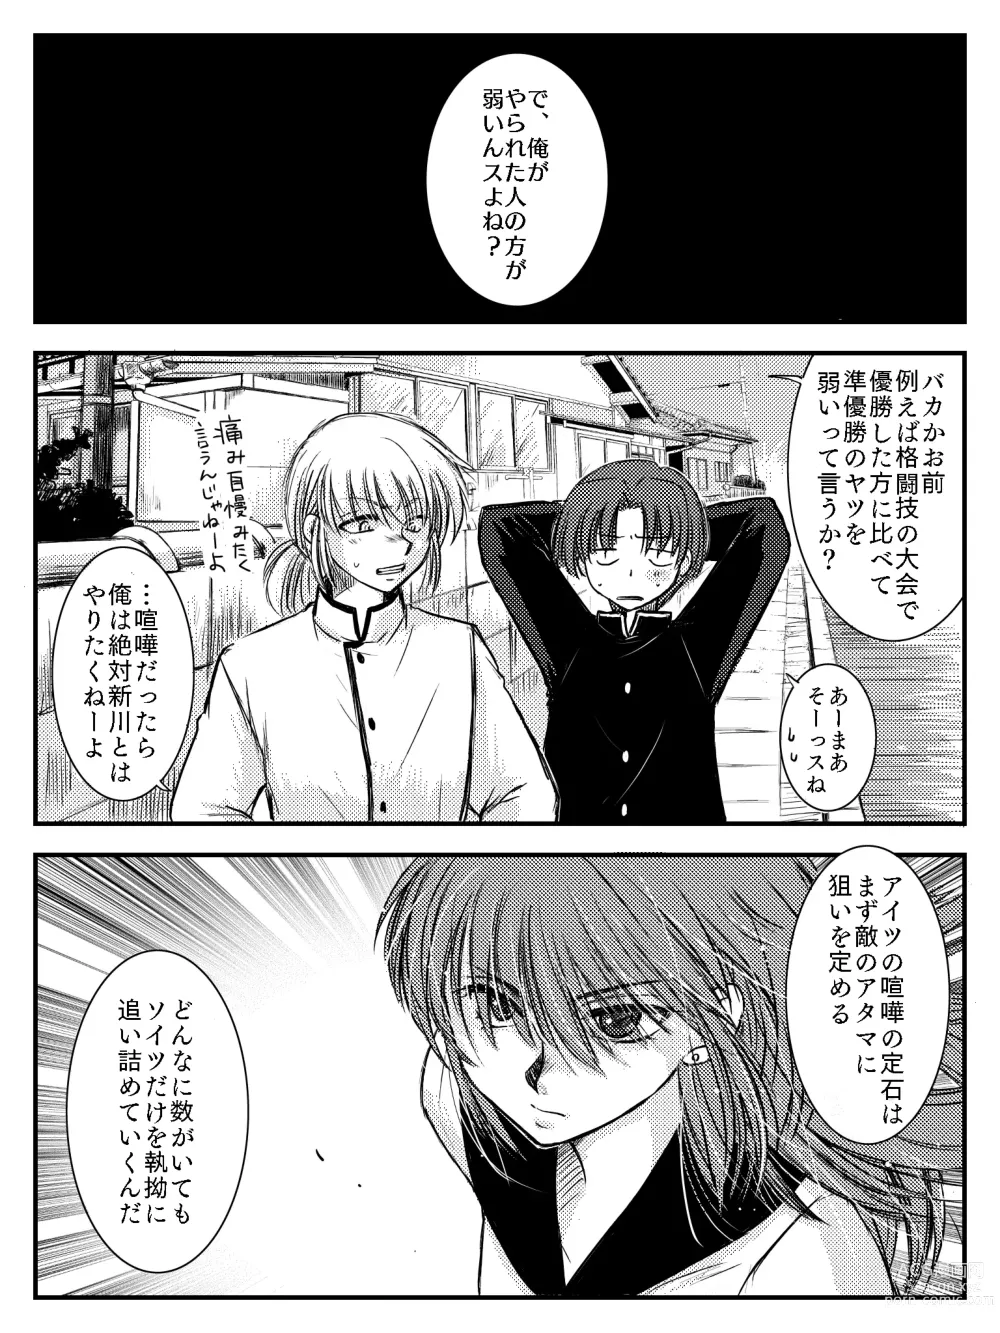 Page 84 of doujinshi LADIES NAVIGATION Episode 4